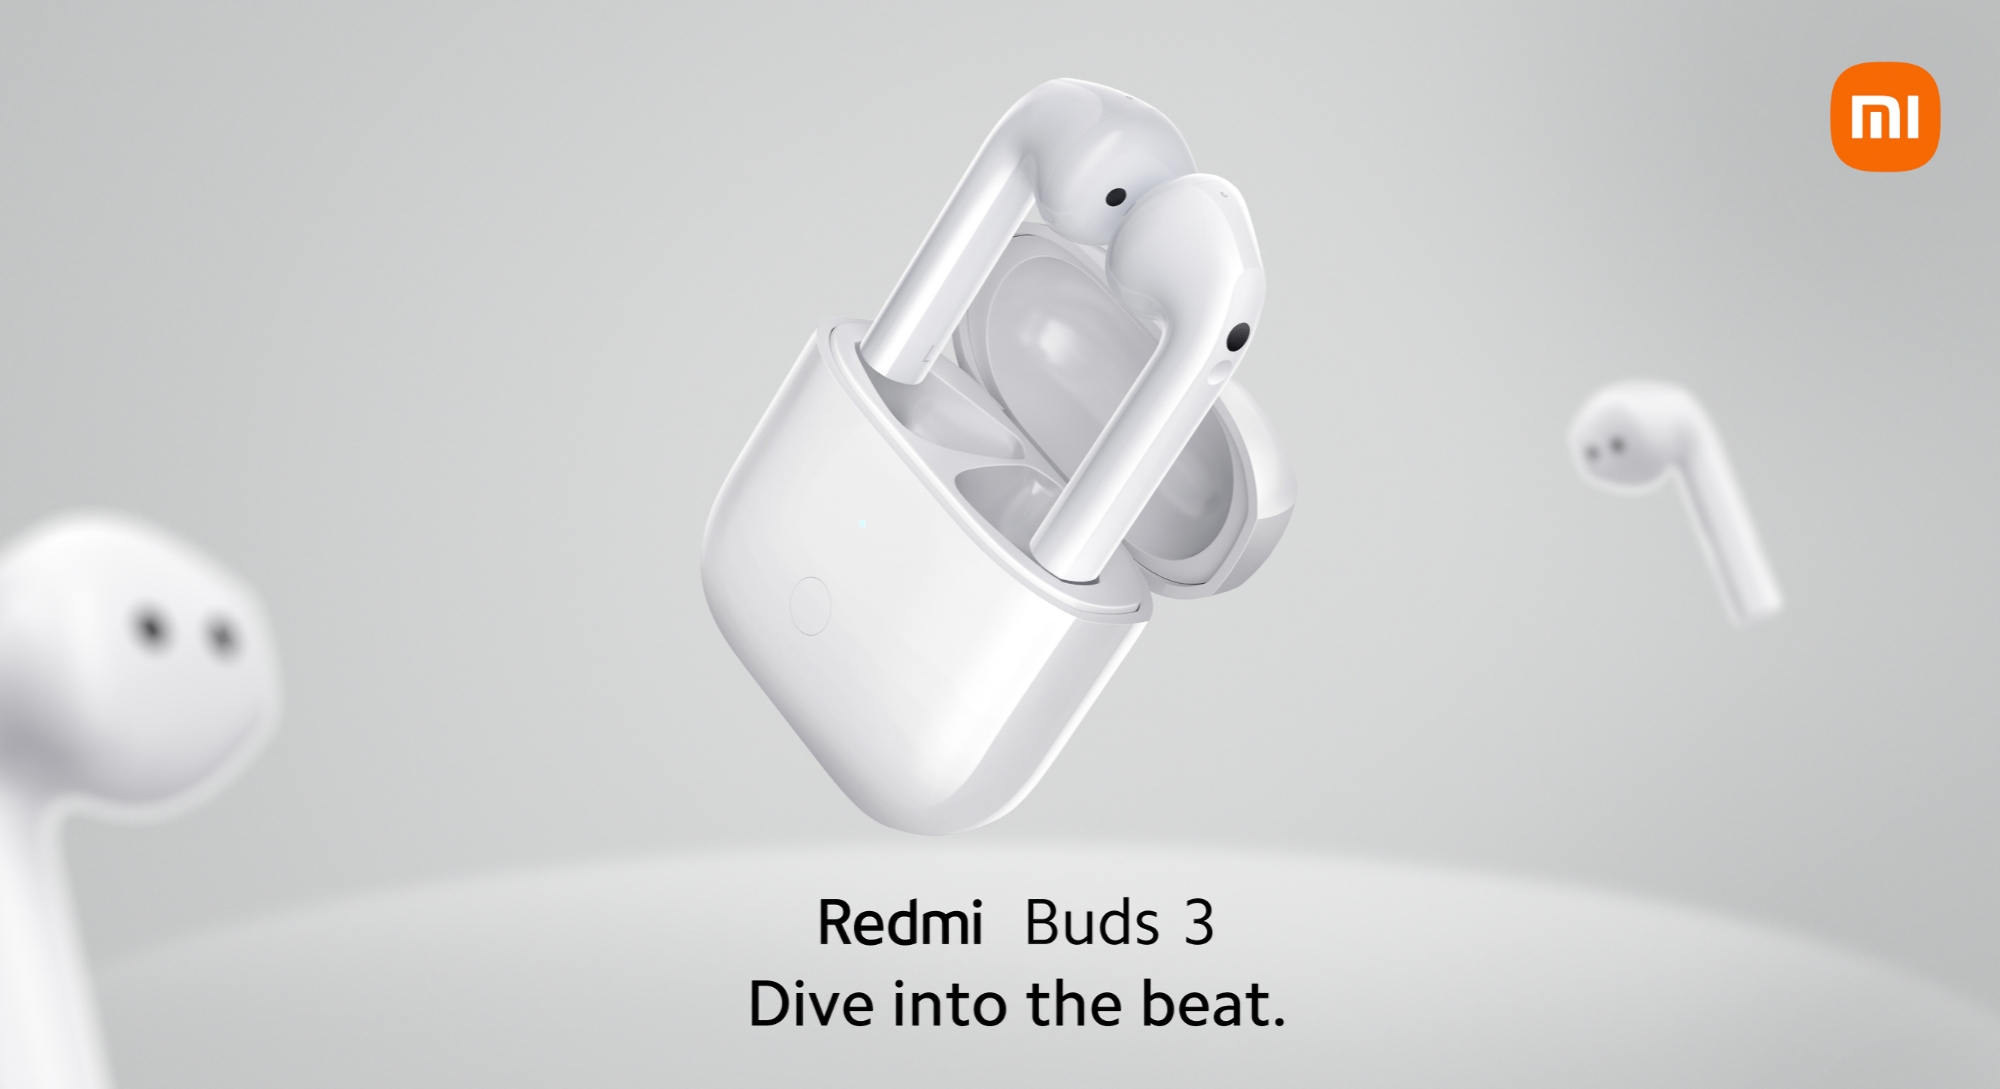 TWS-Kopfhörer Redmi Buds 3 kommen weltweit auf den Markt